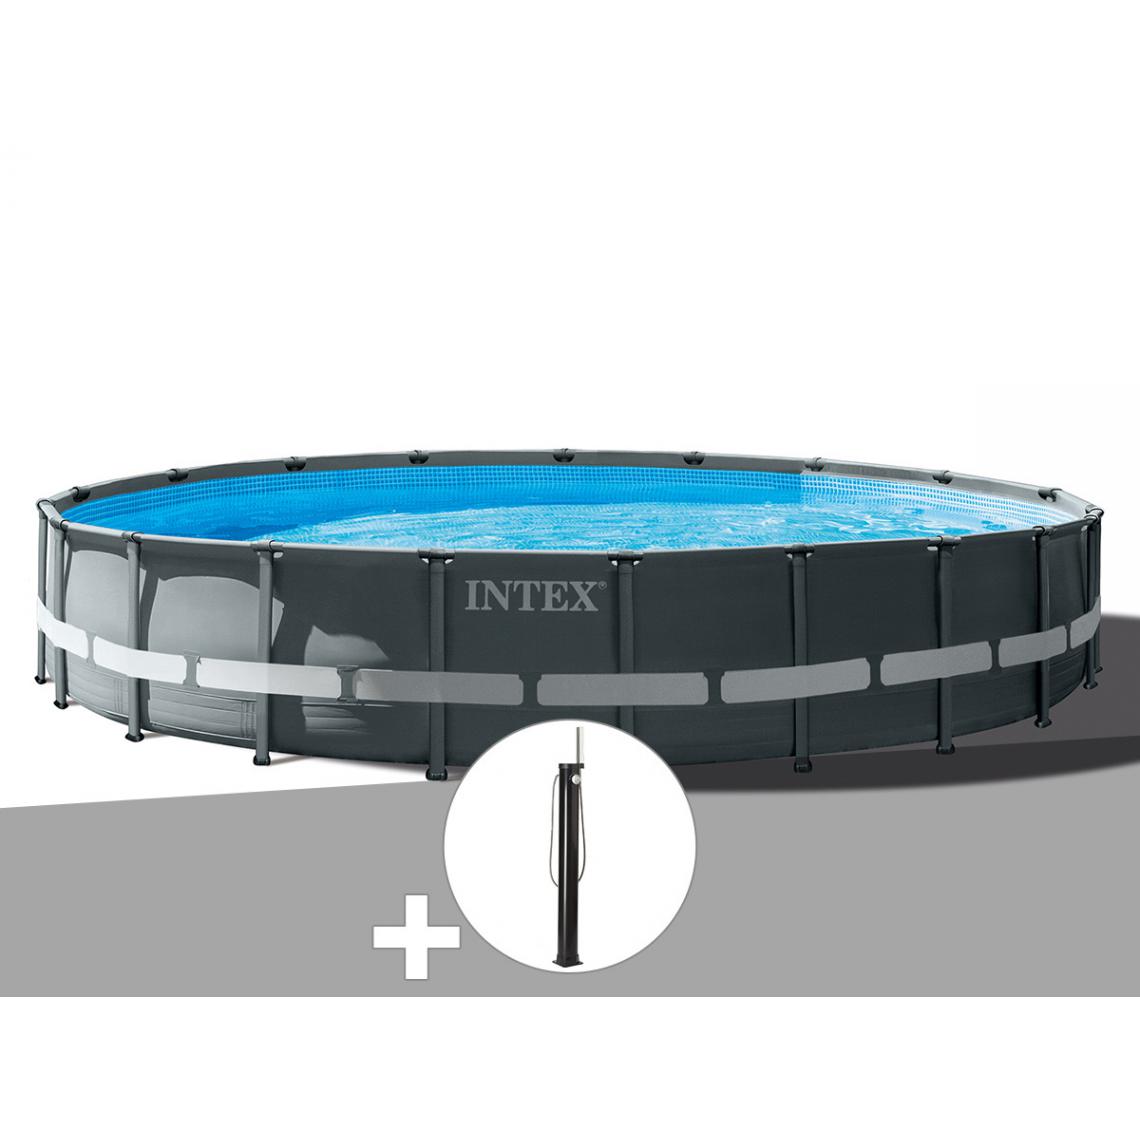 Intex - Kit piscine tubulaire Intex Ultra XTR Frame ronde 6,10 x 1,22 m + Douche solaire - Piscine Tubulaire